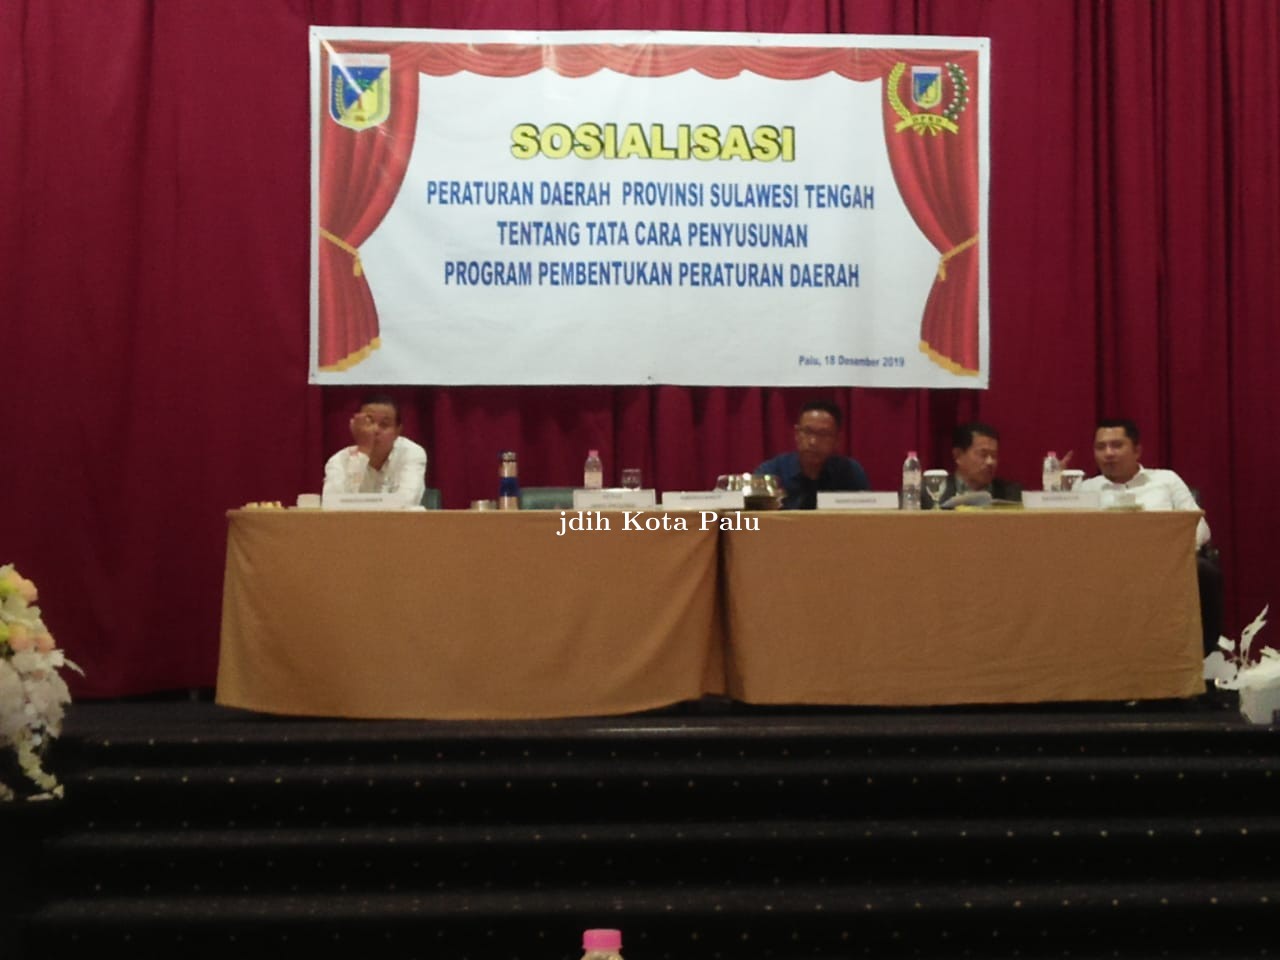 Sosialisasi Perda Provinsi Sulawesi Tengah tentang Tatacara Penyusunan Program Pembentukan Perda